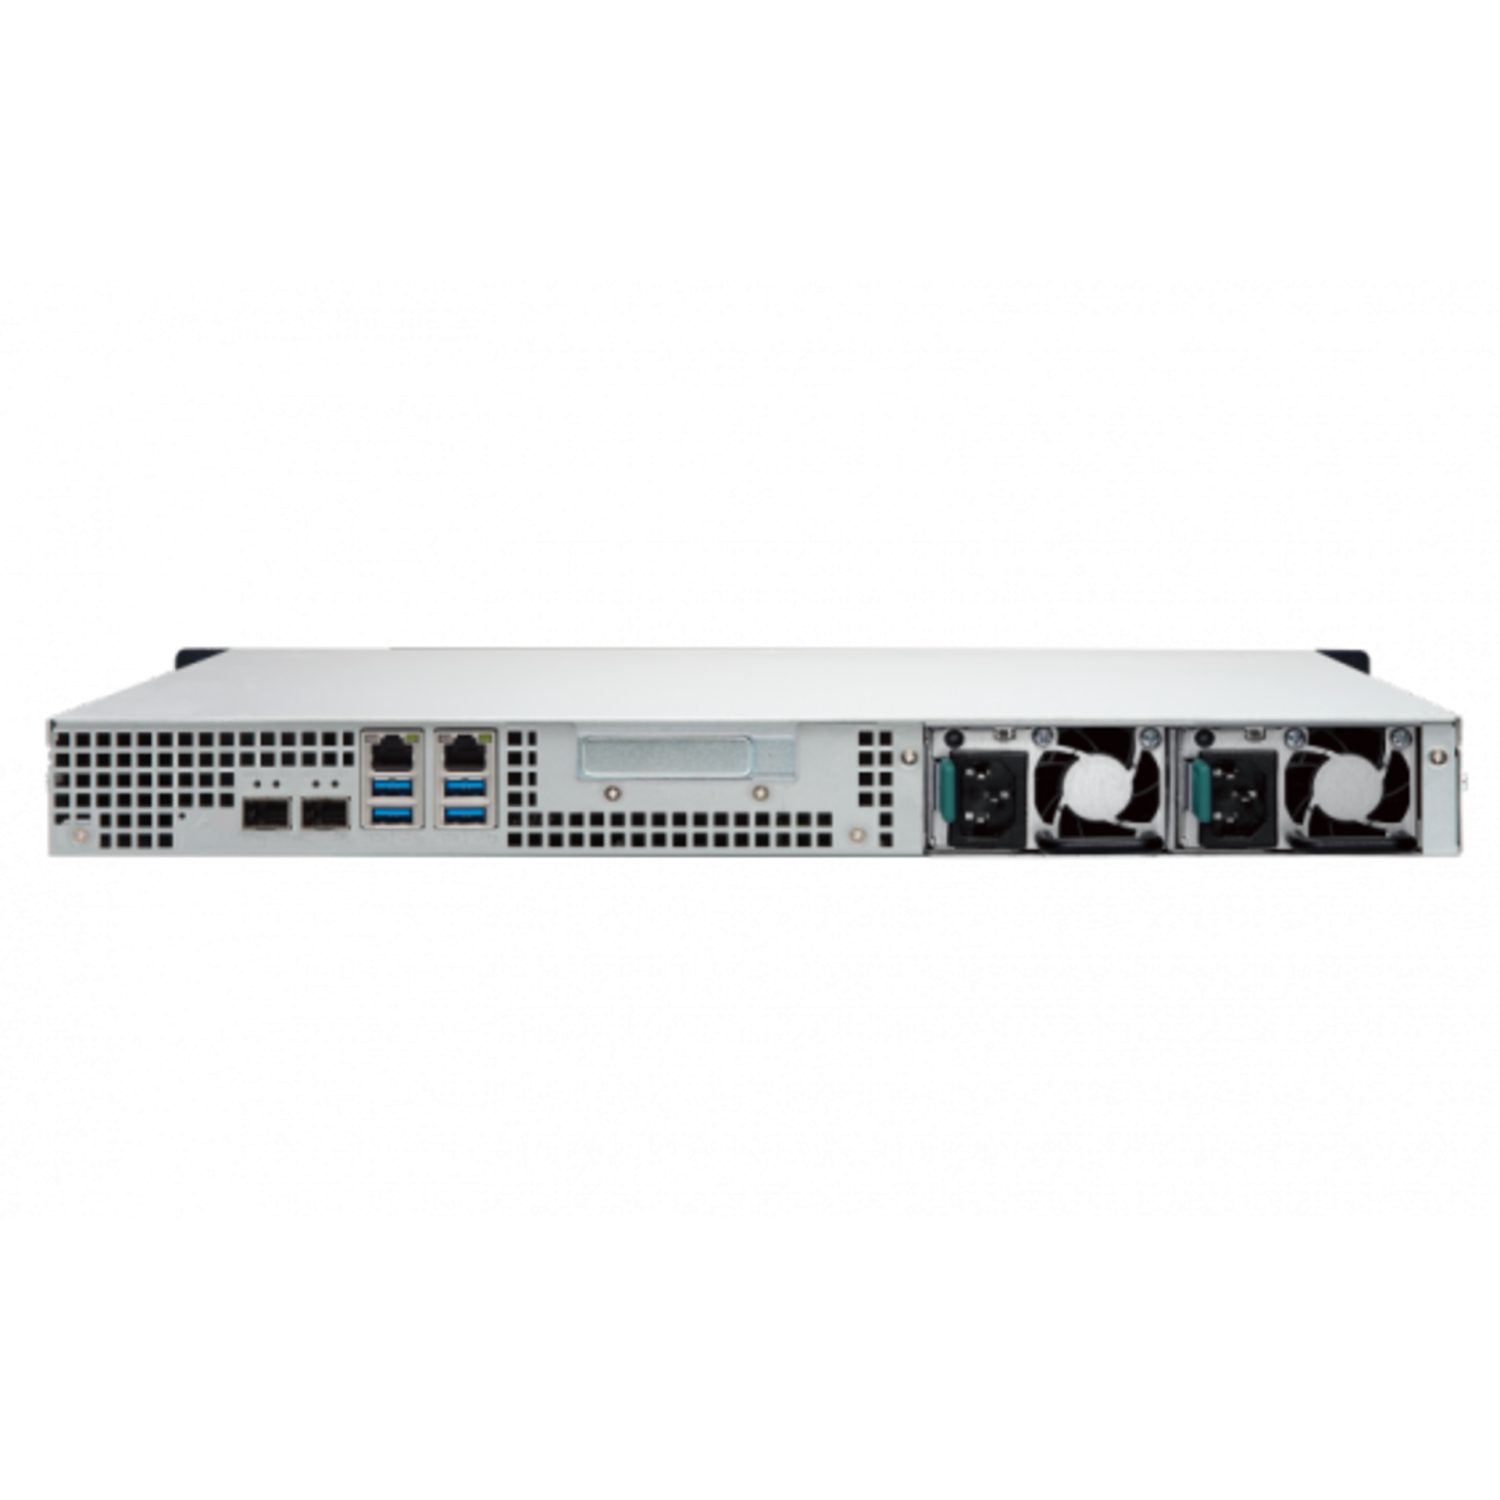 NAS-сервер QNAP TS-432XU-RP